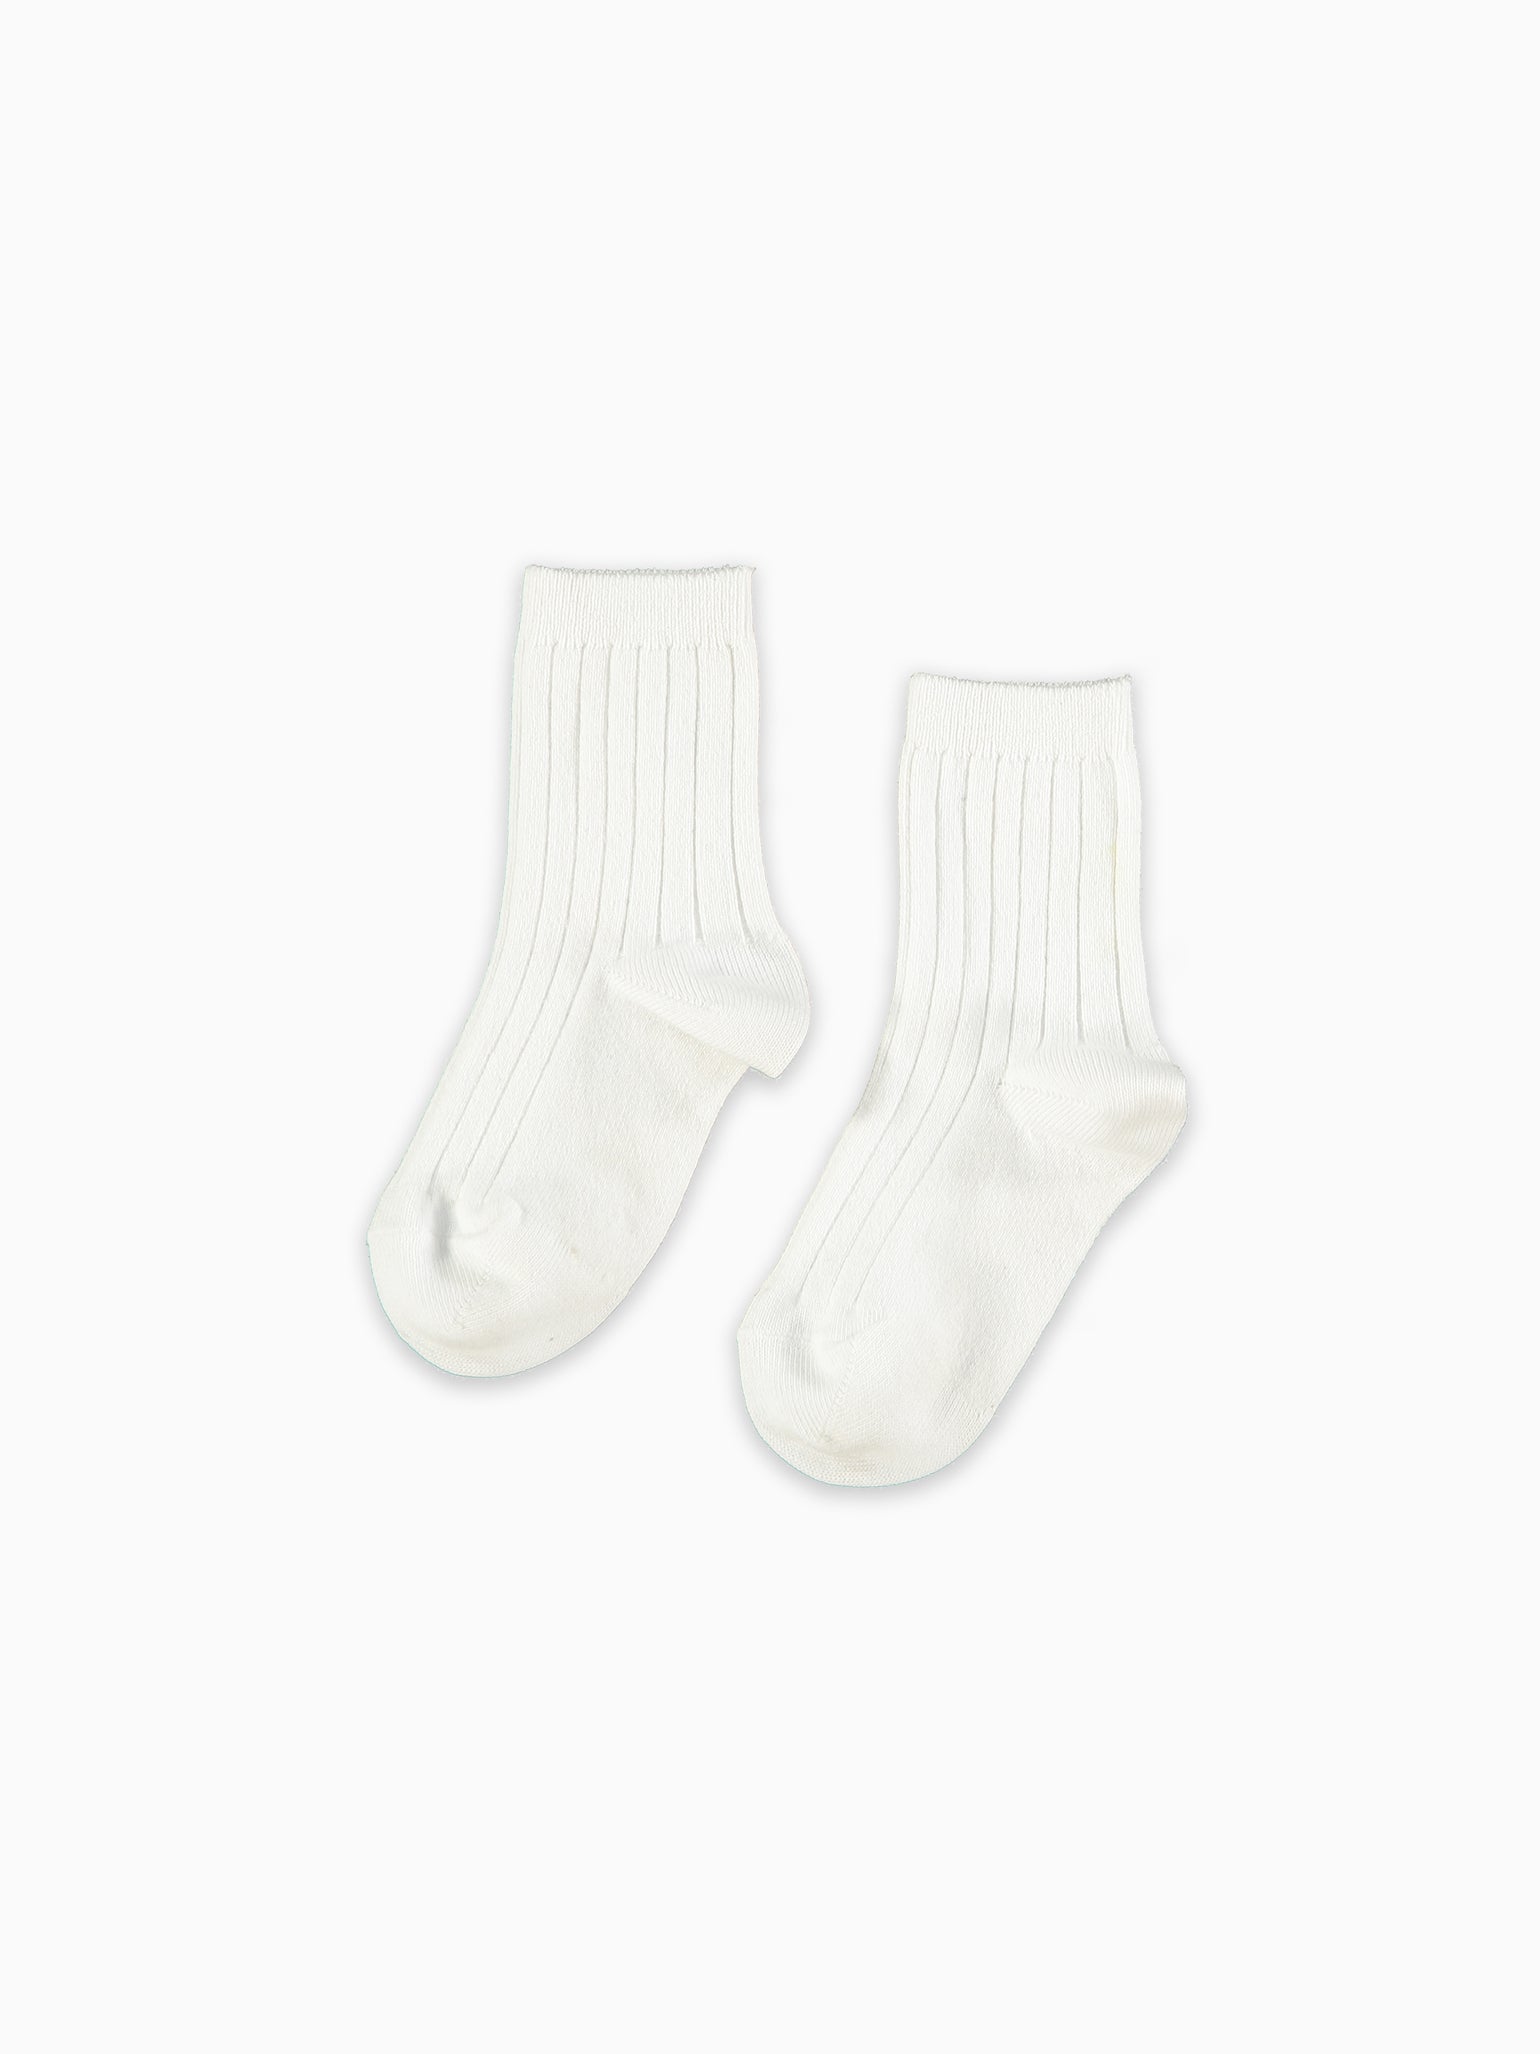 White Ribbed Short Kids Socks Set